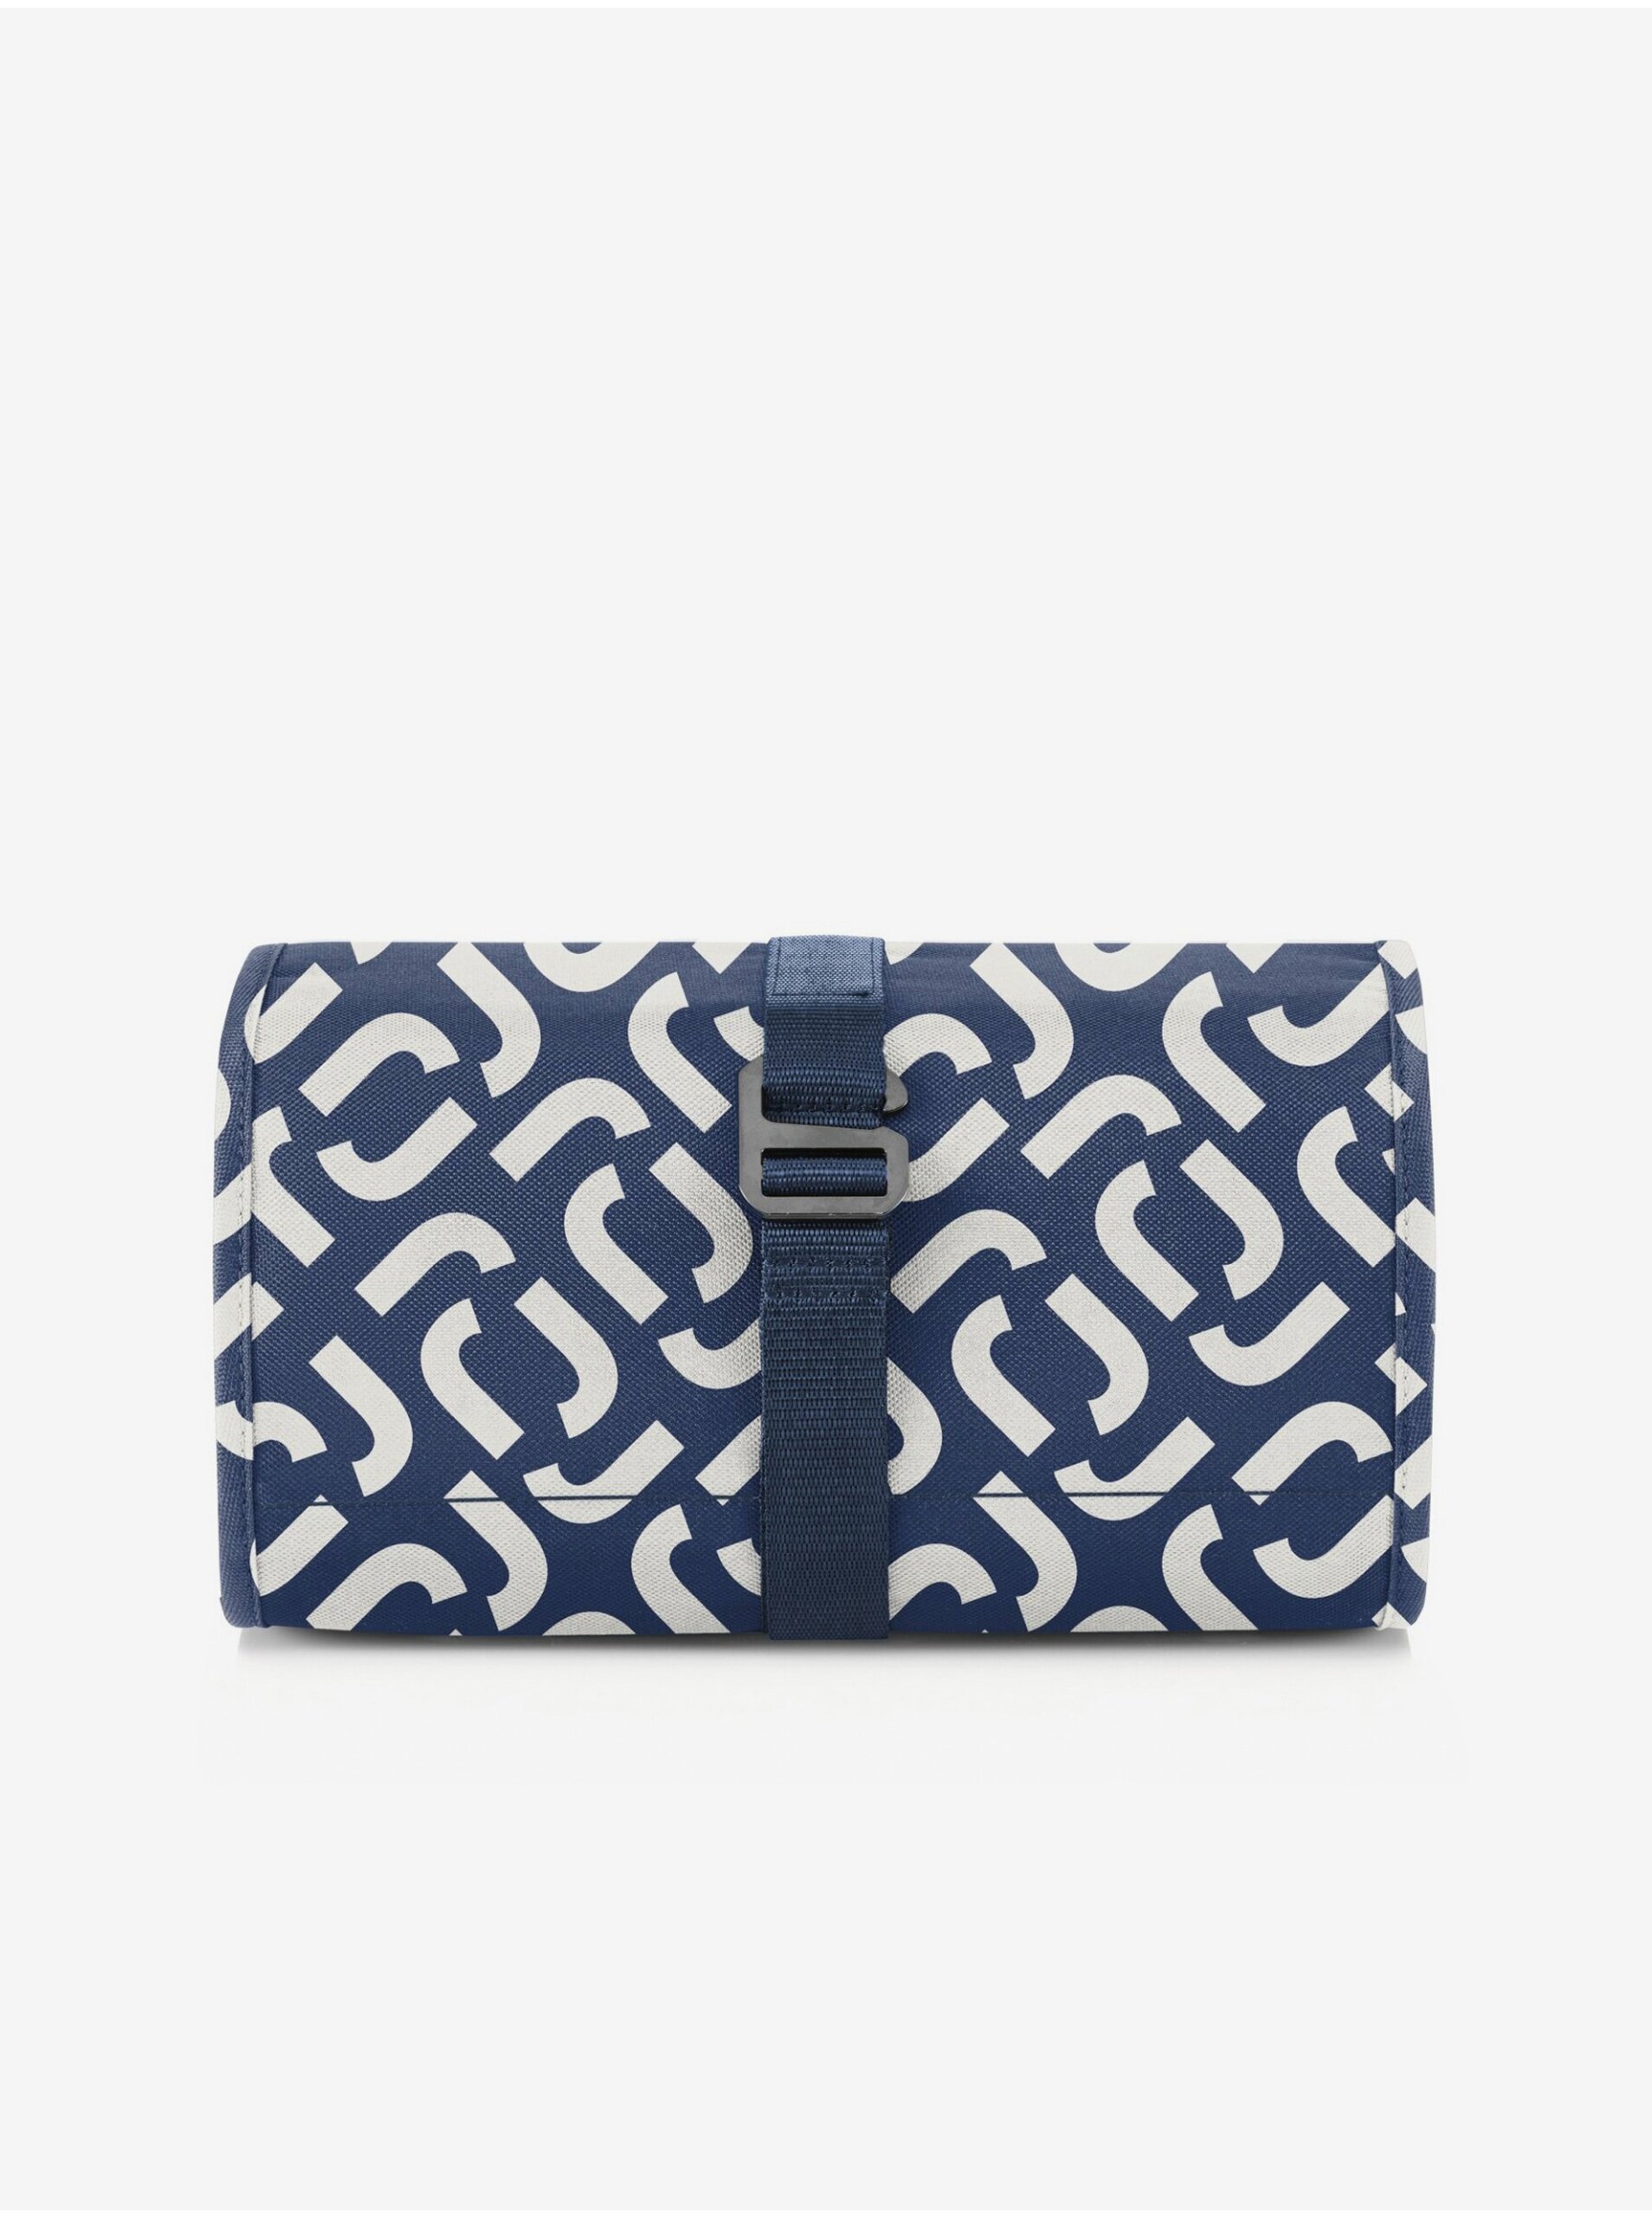 E-shop Tmavě modrá vzorovaná kosmetická taška Reisenthel Wrapcosmetic Signature Navy